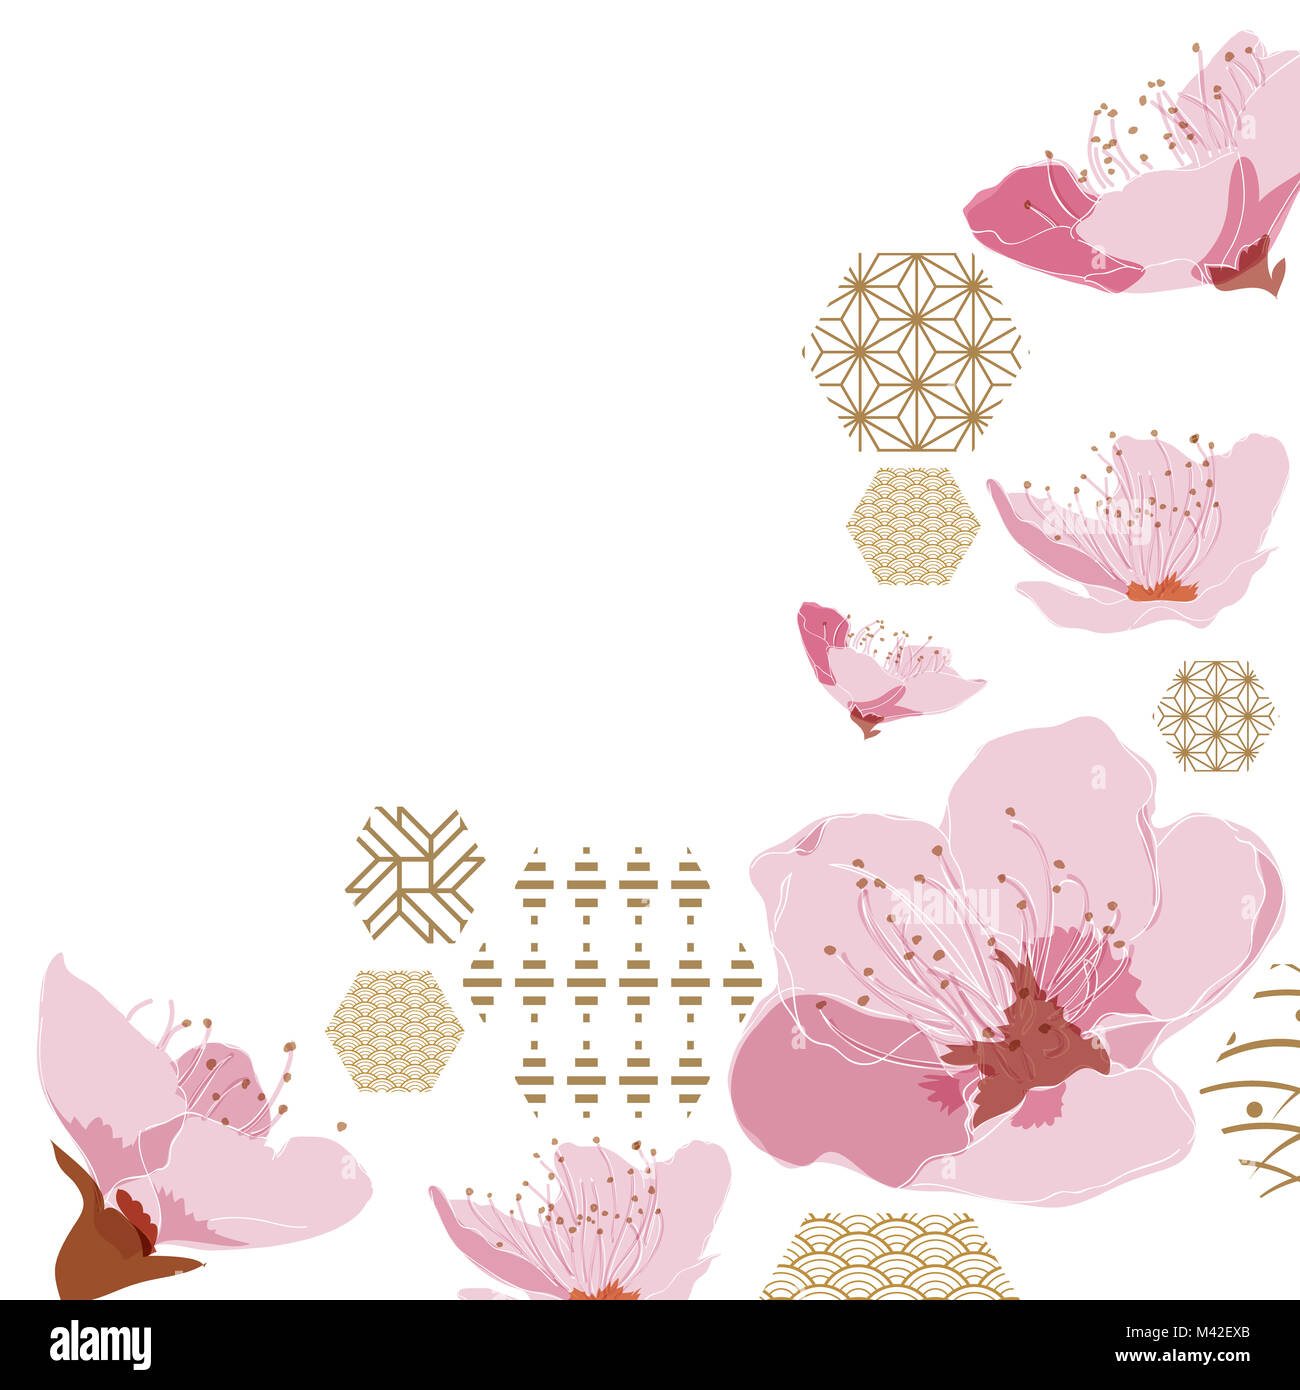 Les cerisiers en fleurs - MARQUE-PAGE - Hisae illustrations